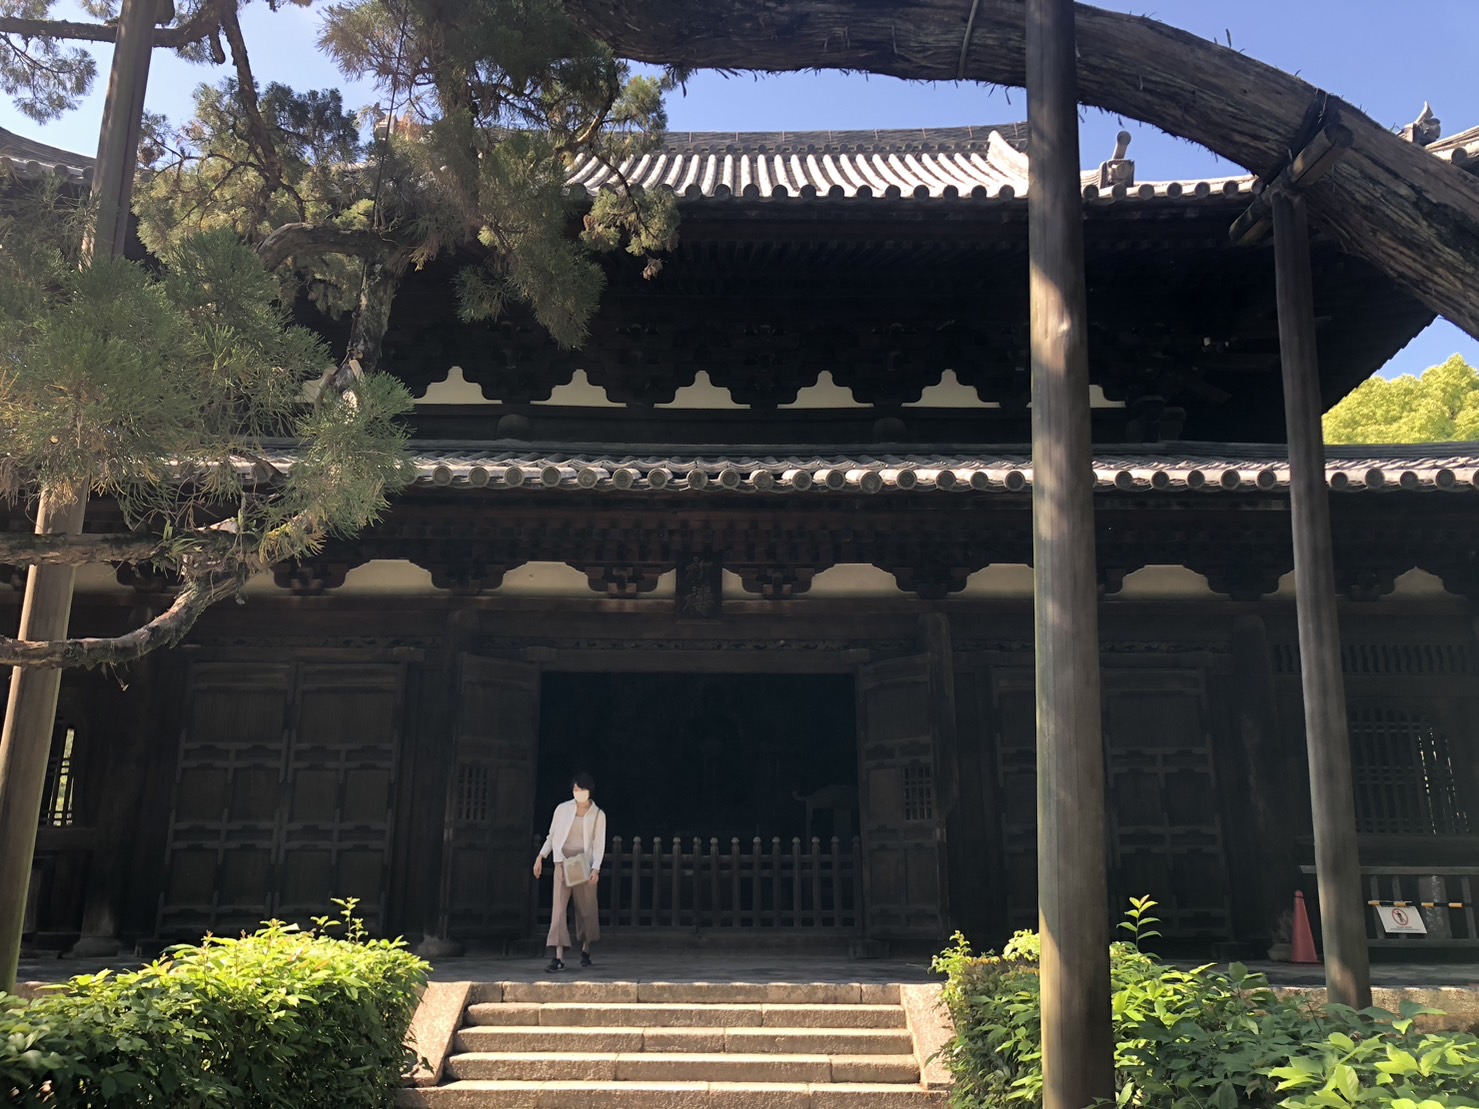 京都 大徳寺 ぶらり散策 特別公開 金毛閣 へ 禅と茶の湯 千利休との